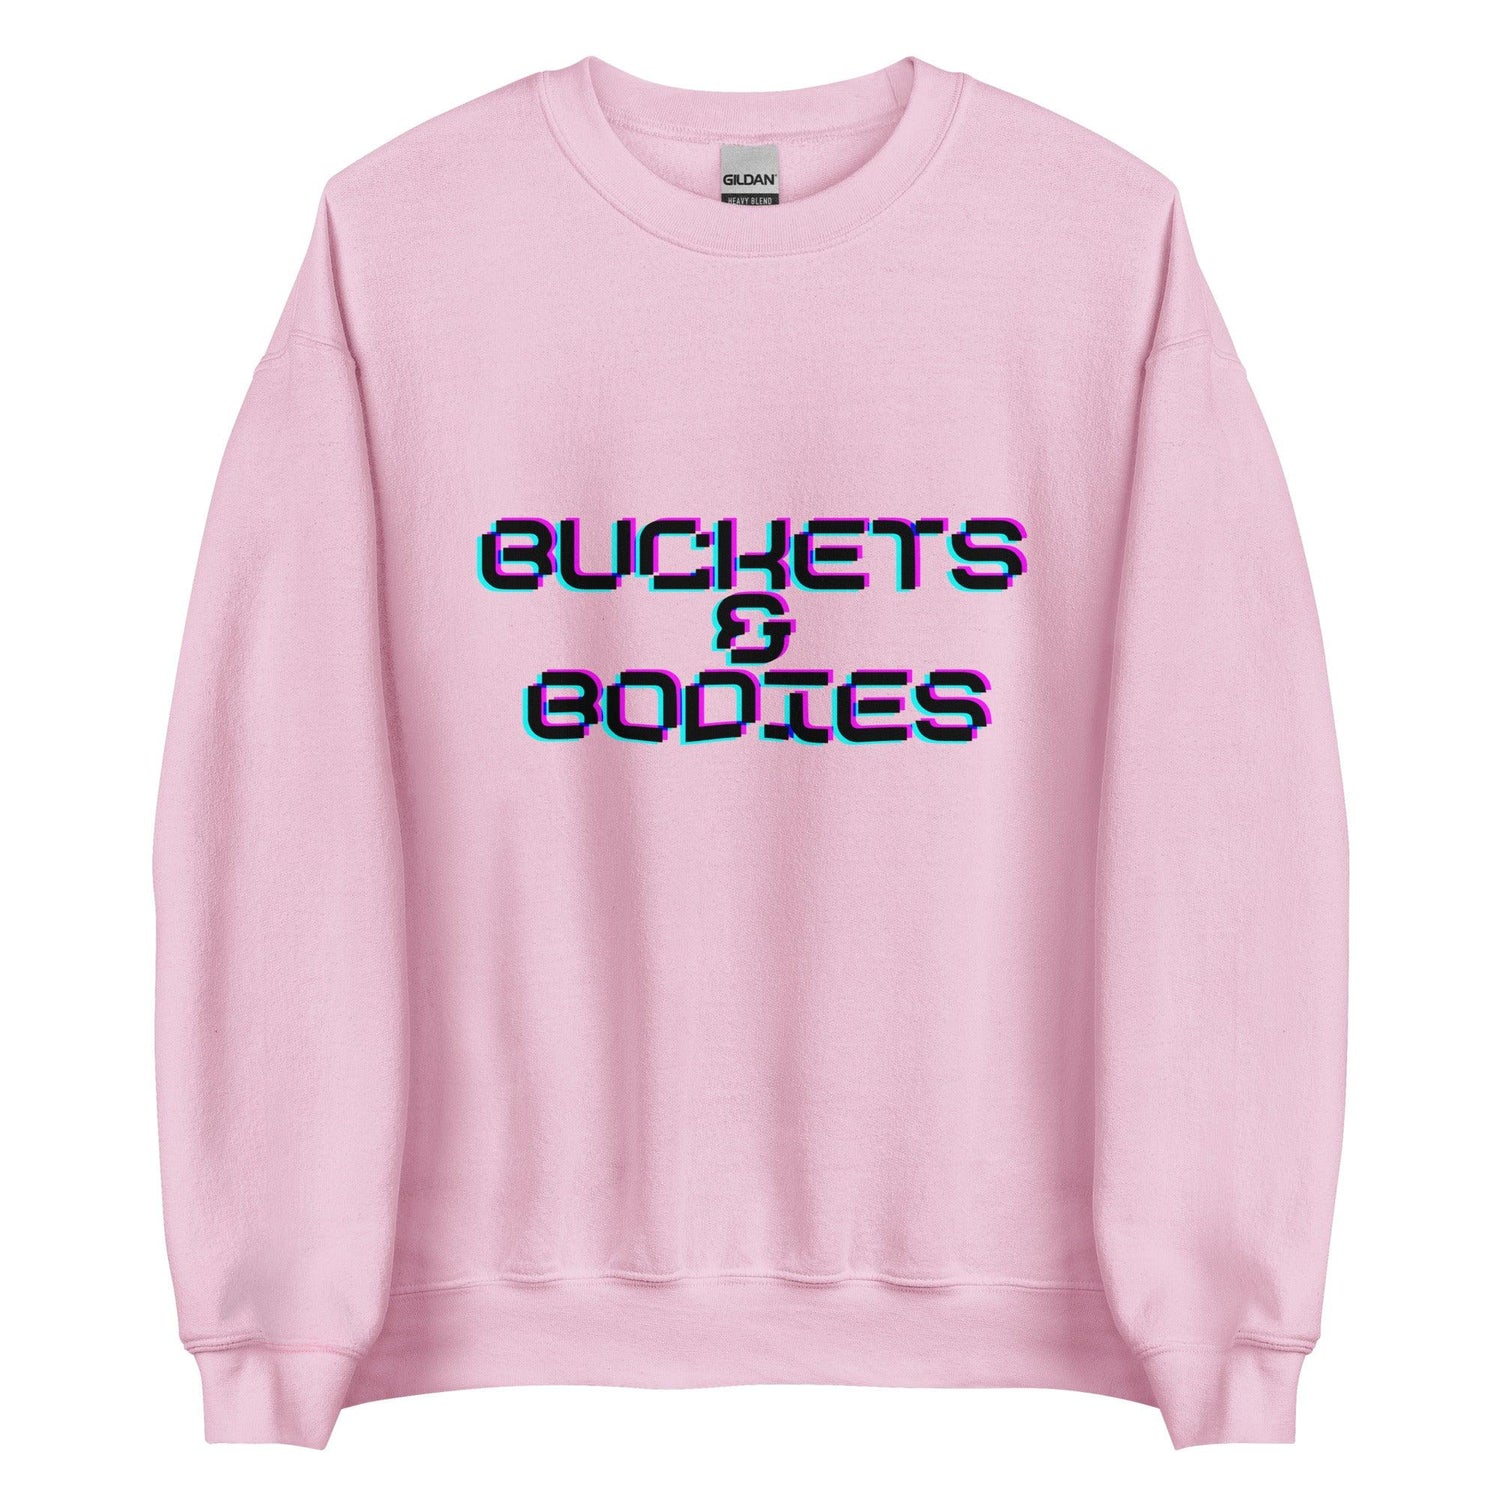 Angelo Sharpless "Buckets & Bodies" Sweatshirt - Fan Arch